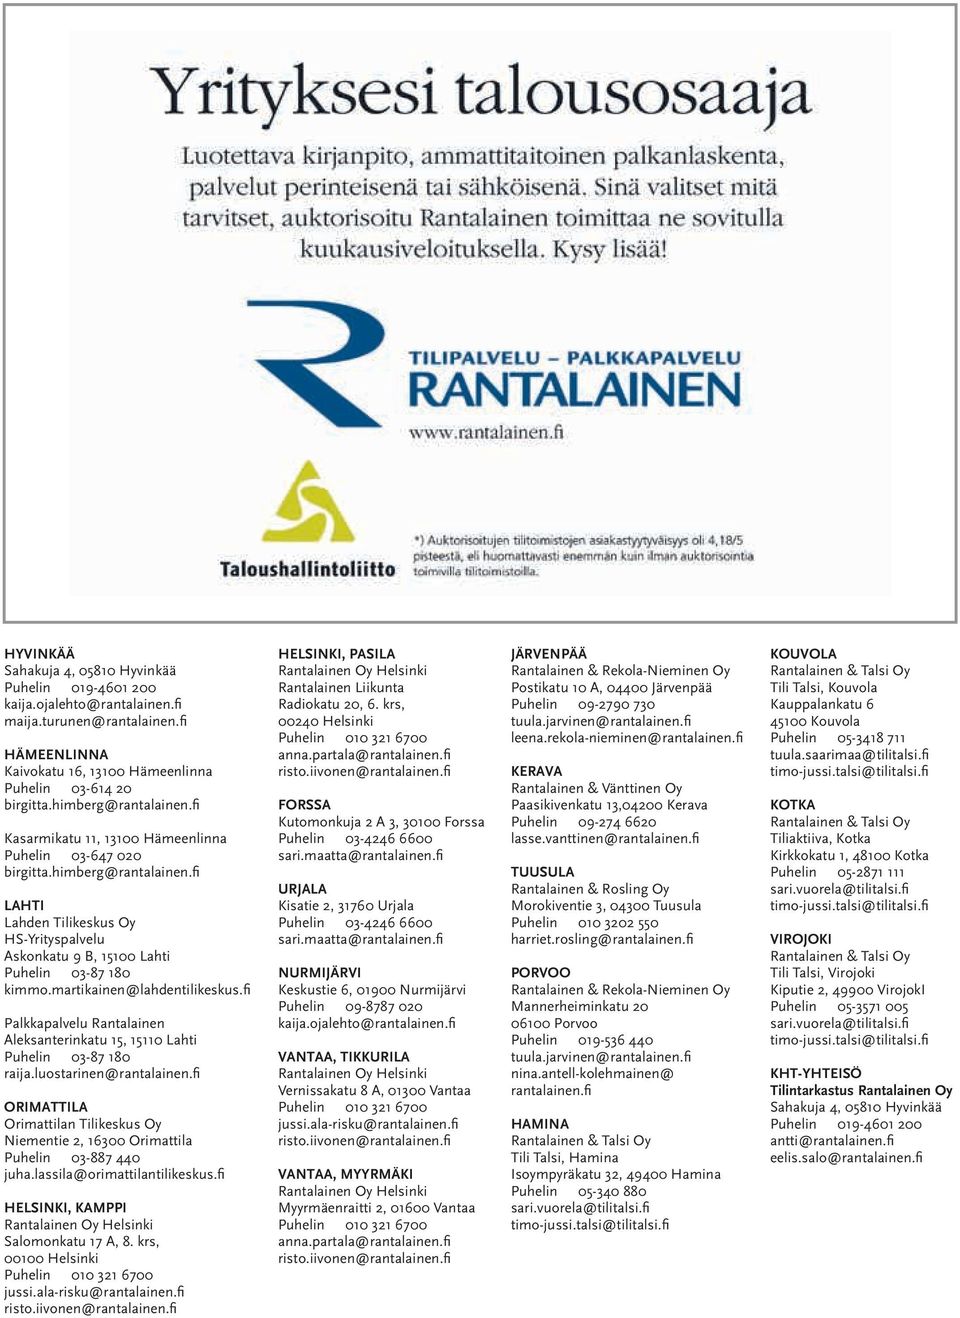 martikainen@lahdentilikeskus.fi Palkkapalvelu Rantalainen Aleksanterinkatu 15, 15110 Lahti Puhelin 03-87 180 raija.luostarinen@rantalainen.